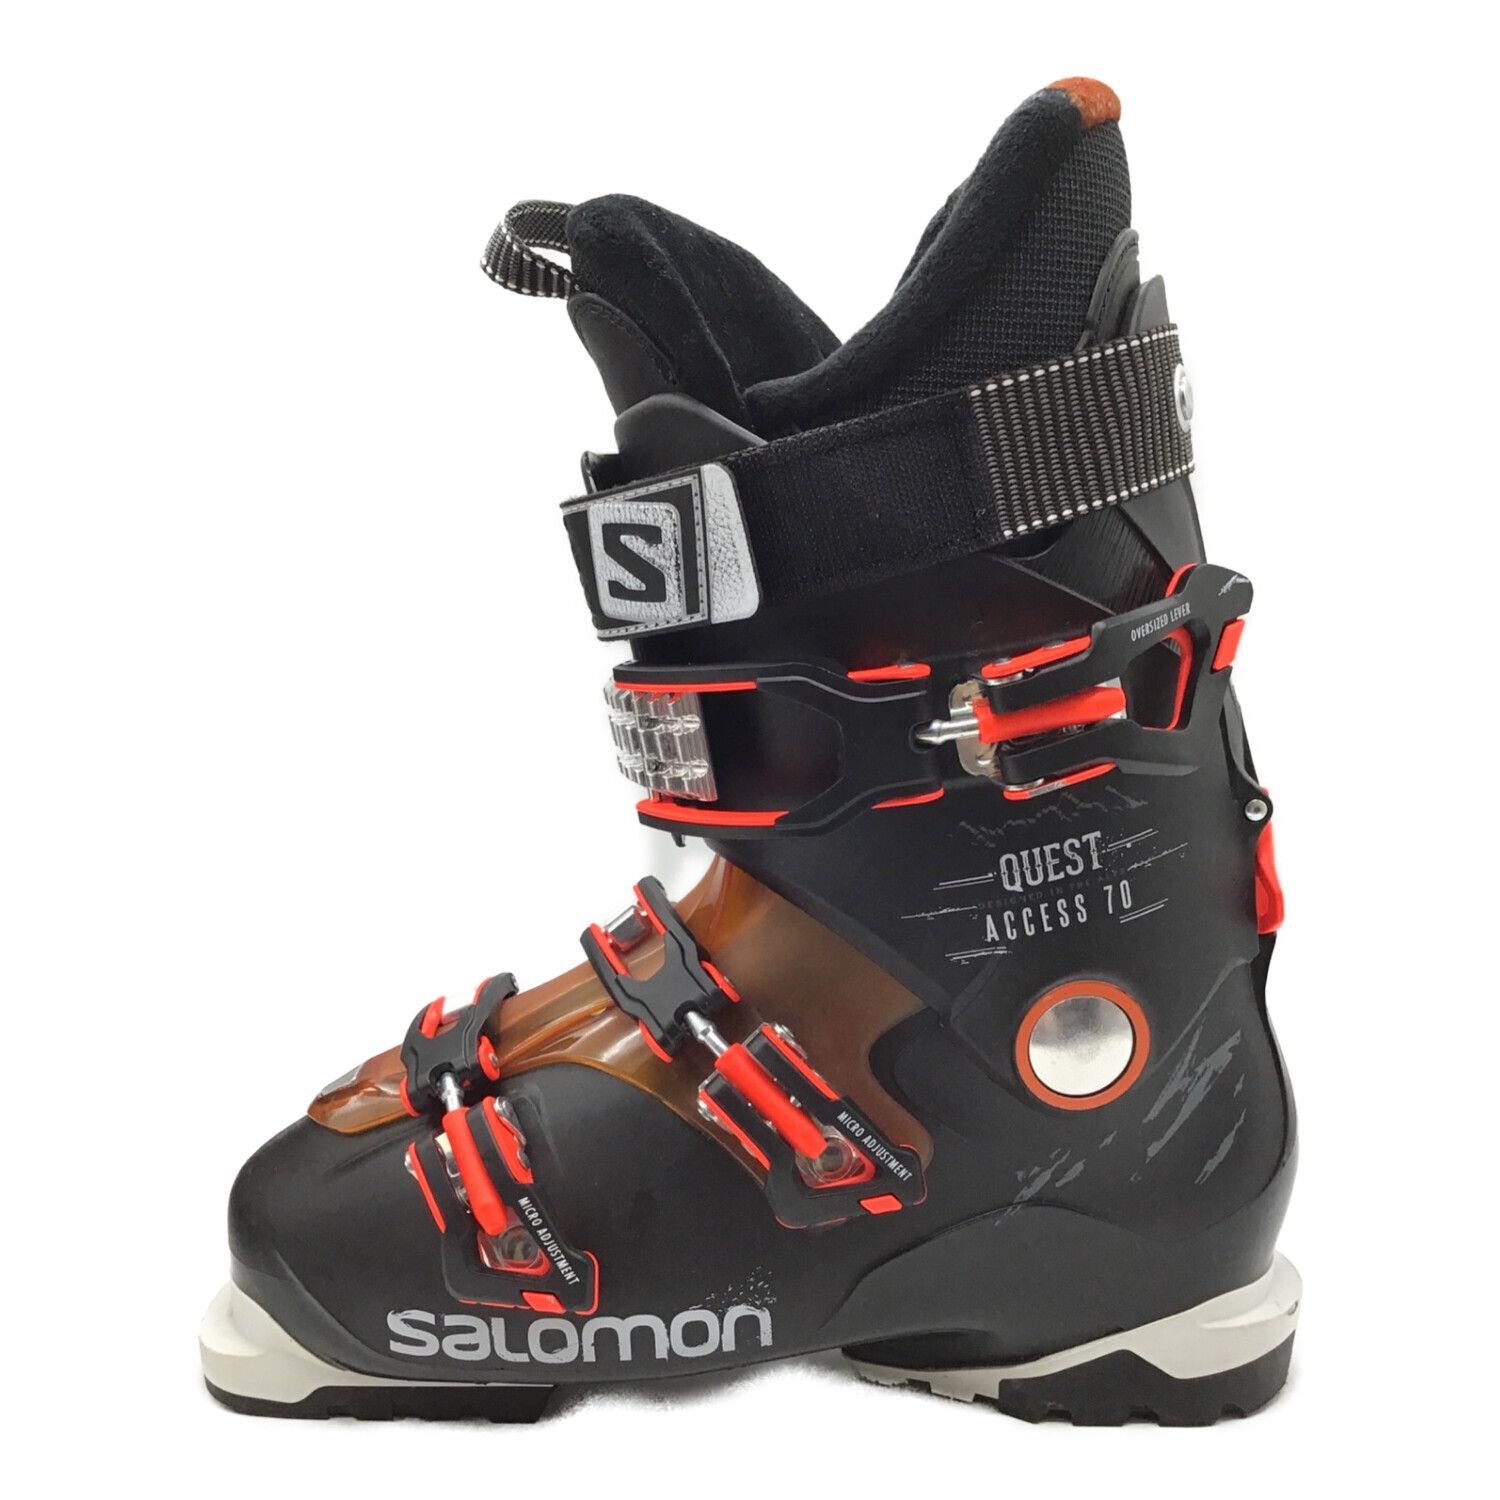 SALOMON (サロモン) スキーブーツ メンズ SIZE 26.5cm ブラック 